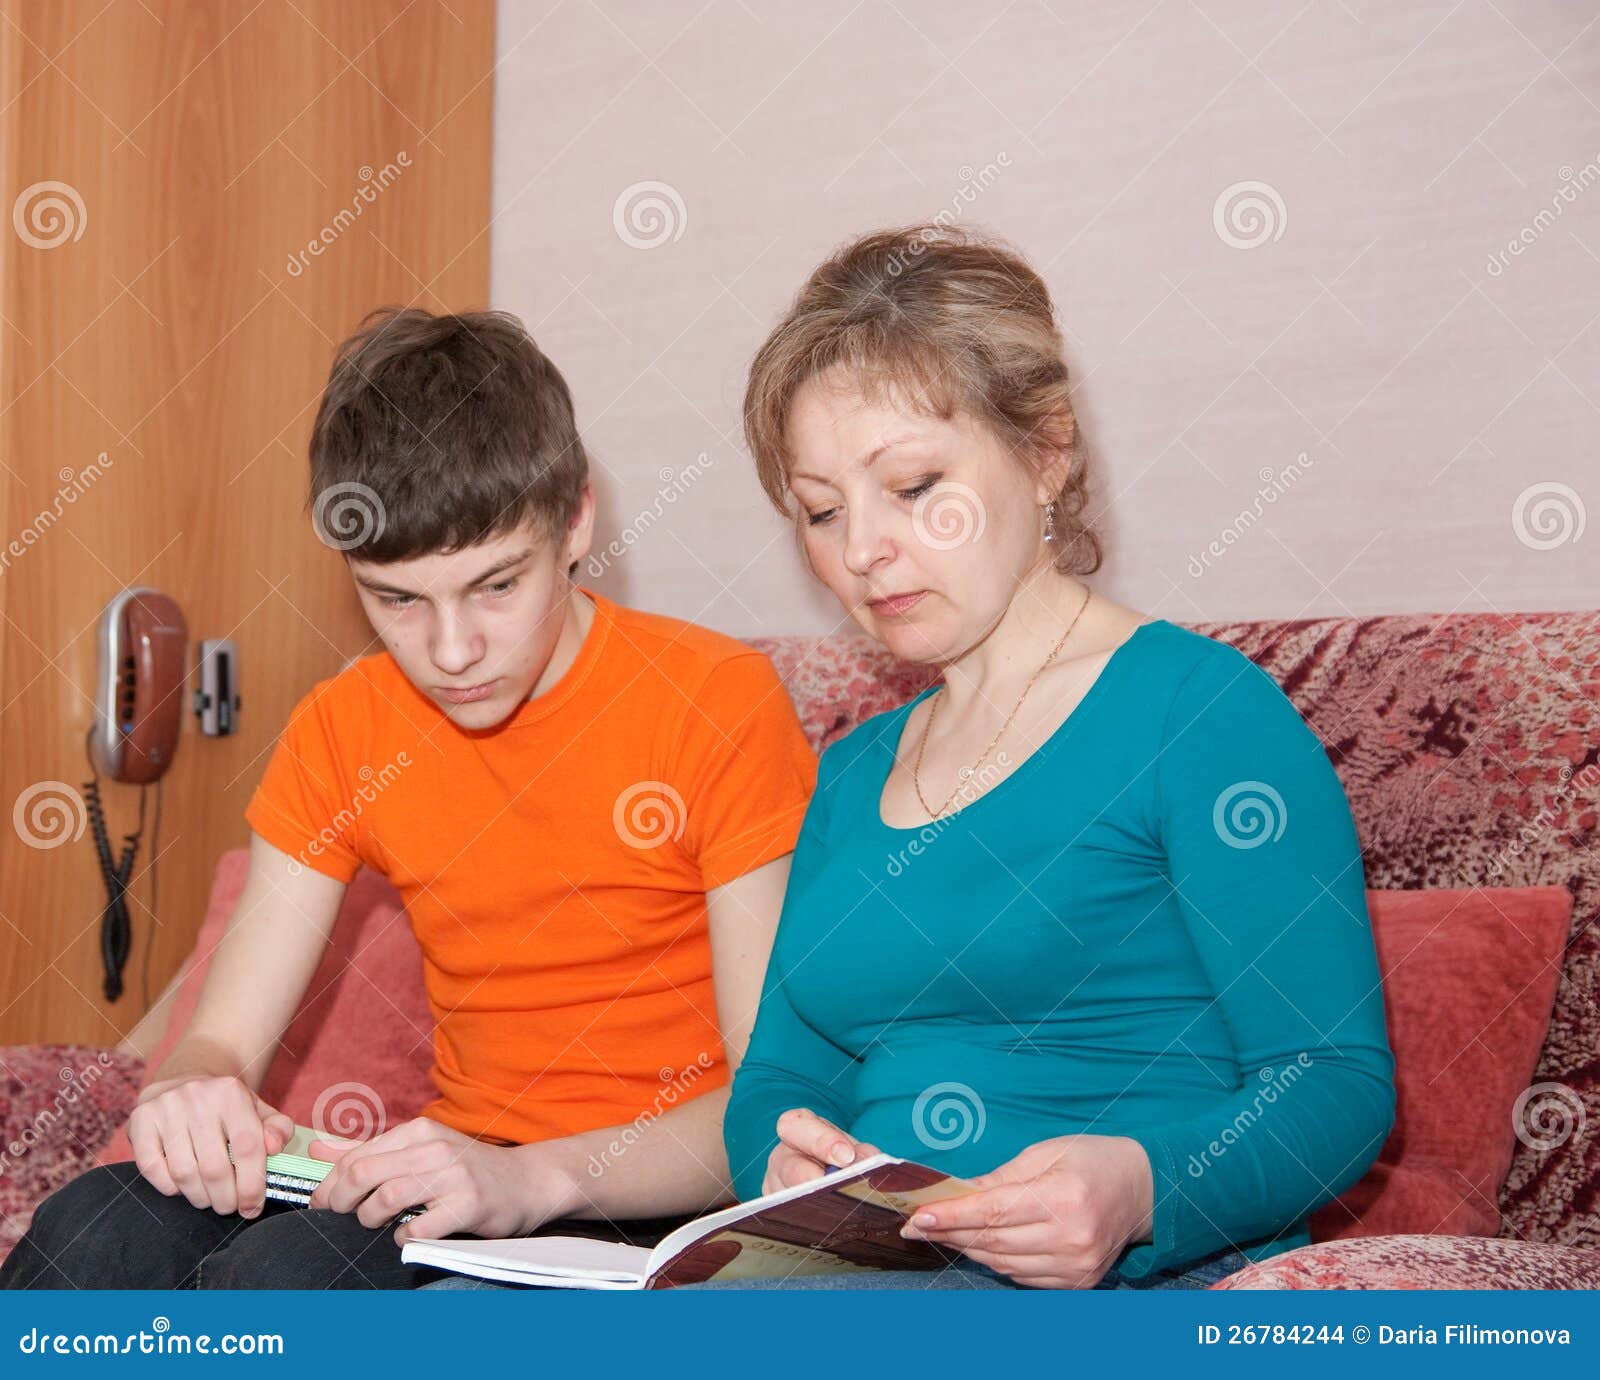 Мама помогает сыну домашнее. Мать проводит сына. Мать и сын учатся. Мама показывает сыну картинку. Мама помогает сыну с уроками.